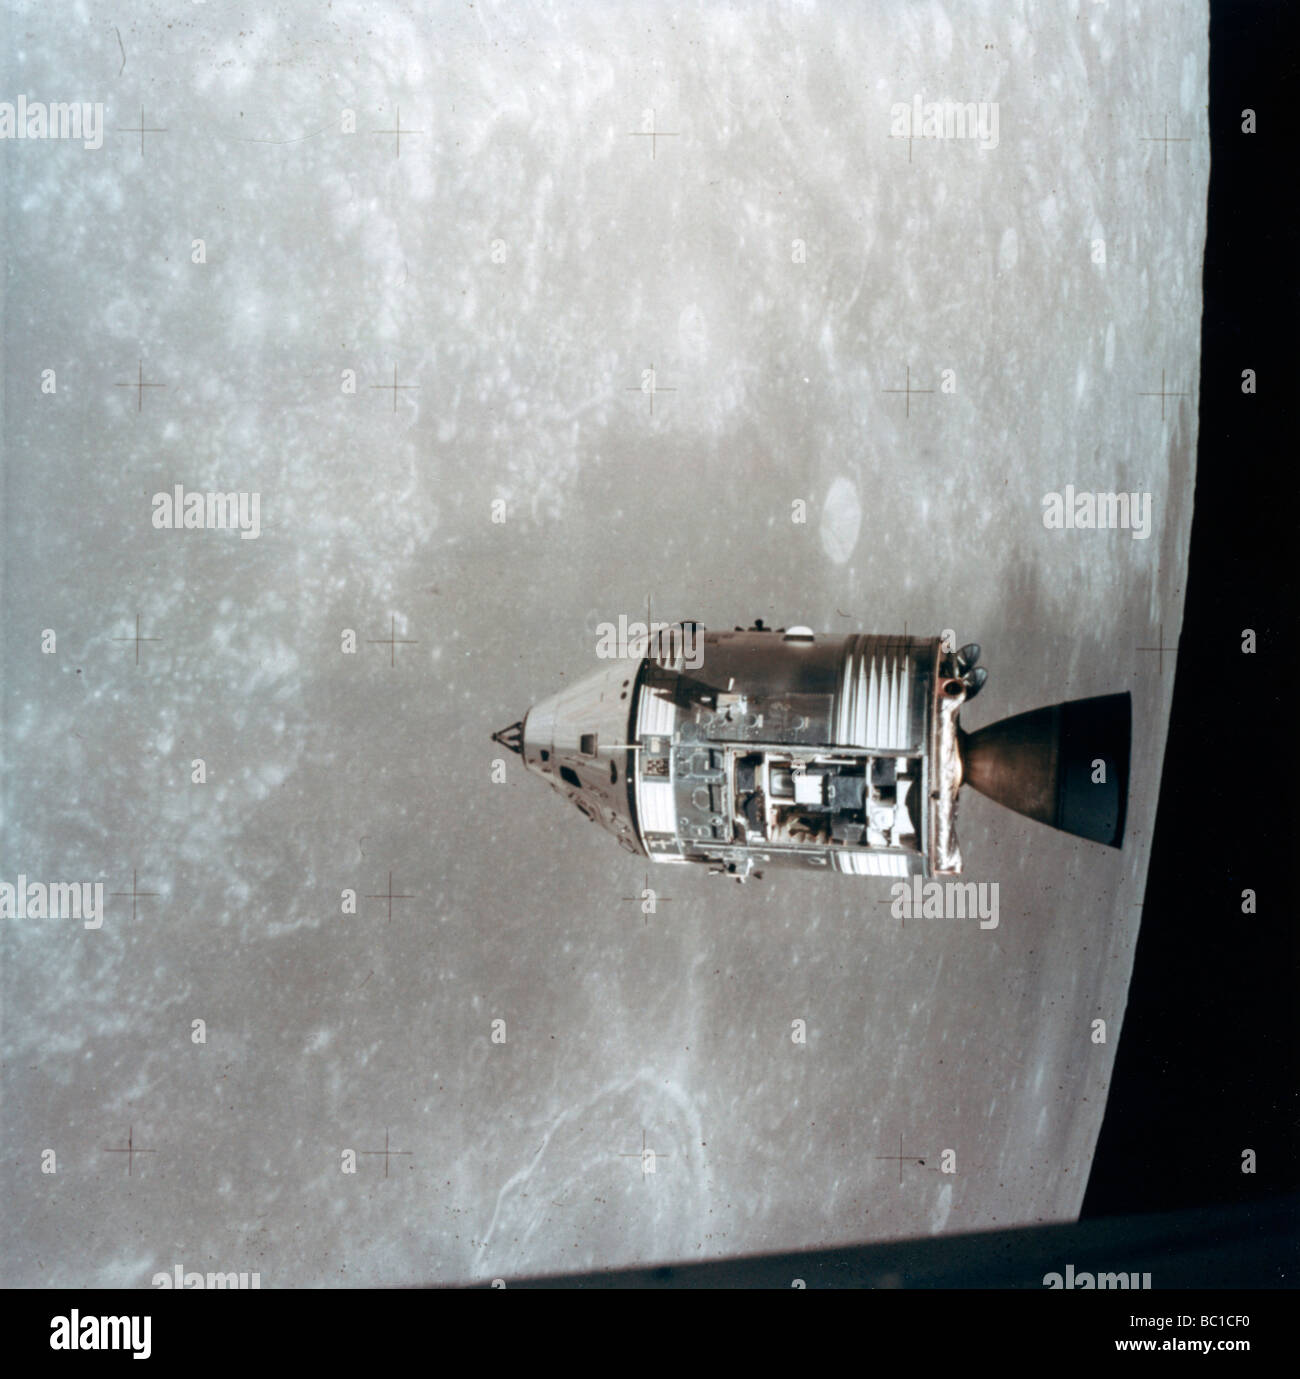 Die Apollo 15 Befehl und Service Module in der Mondumlaufbahn, 1971 Künstler: NASA Stockfoto